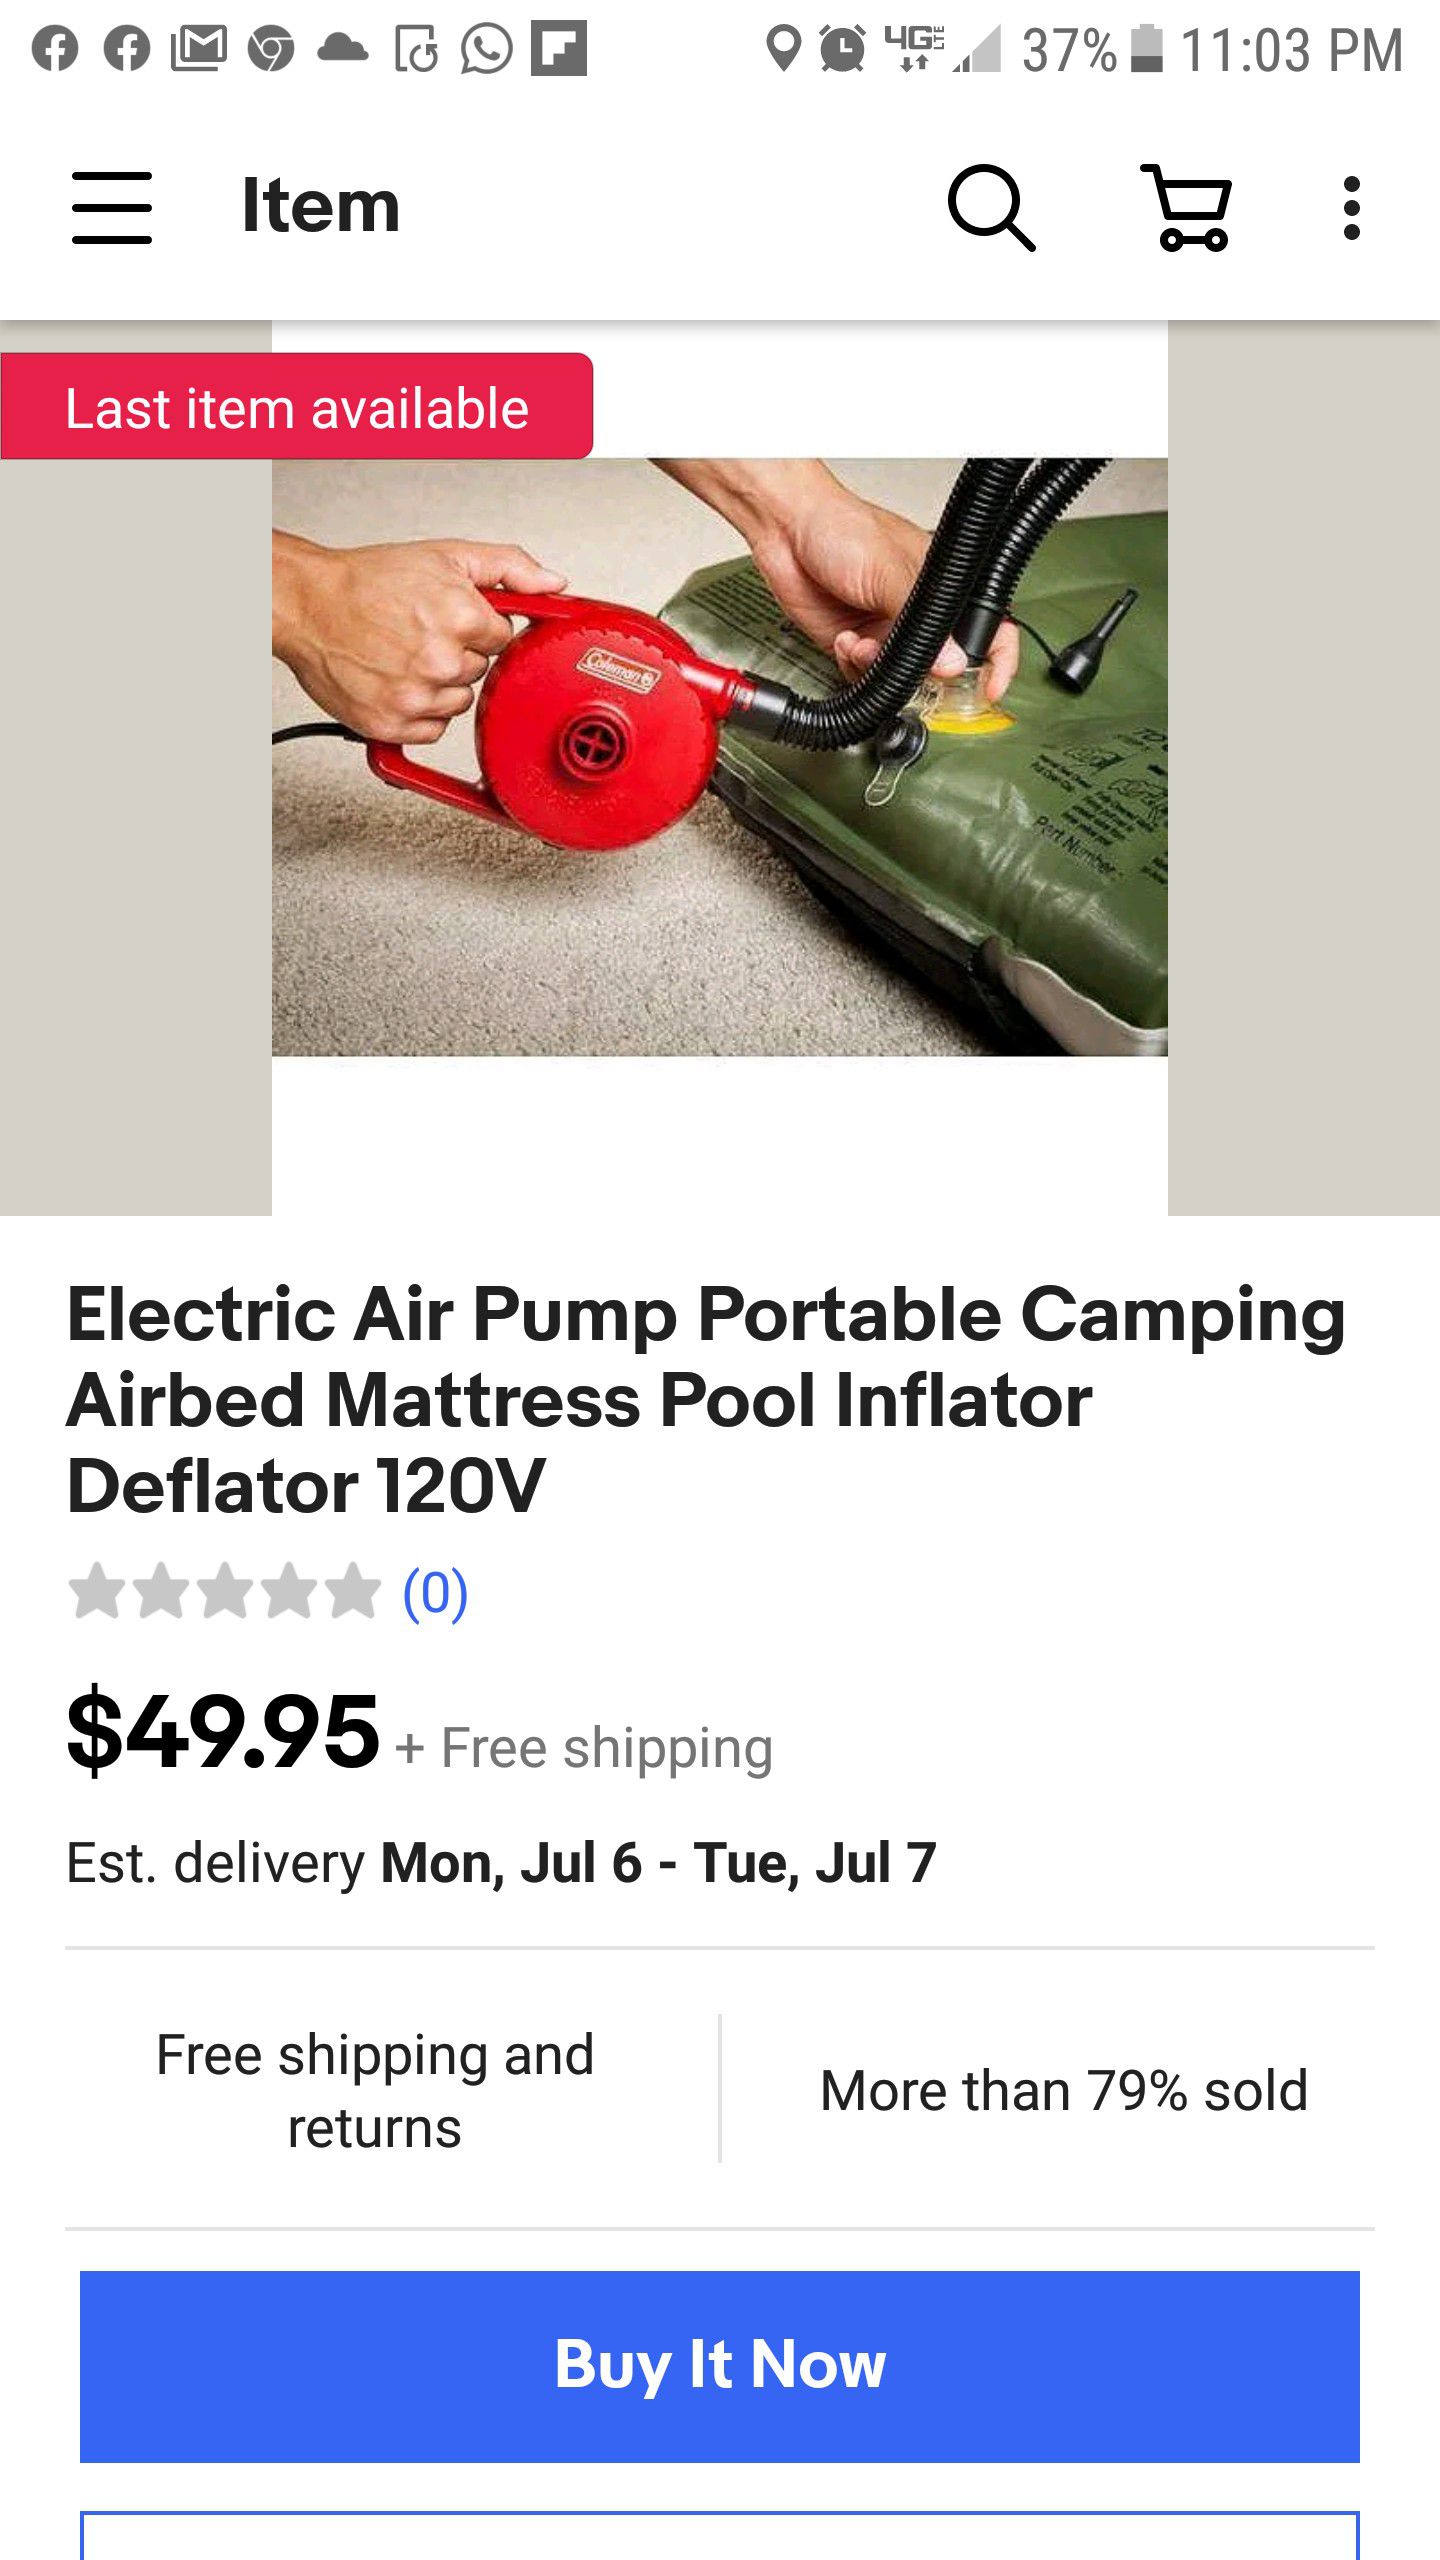 Poor/ air mattress air pump